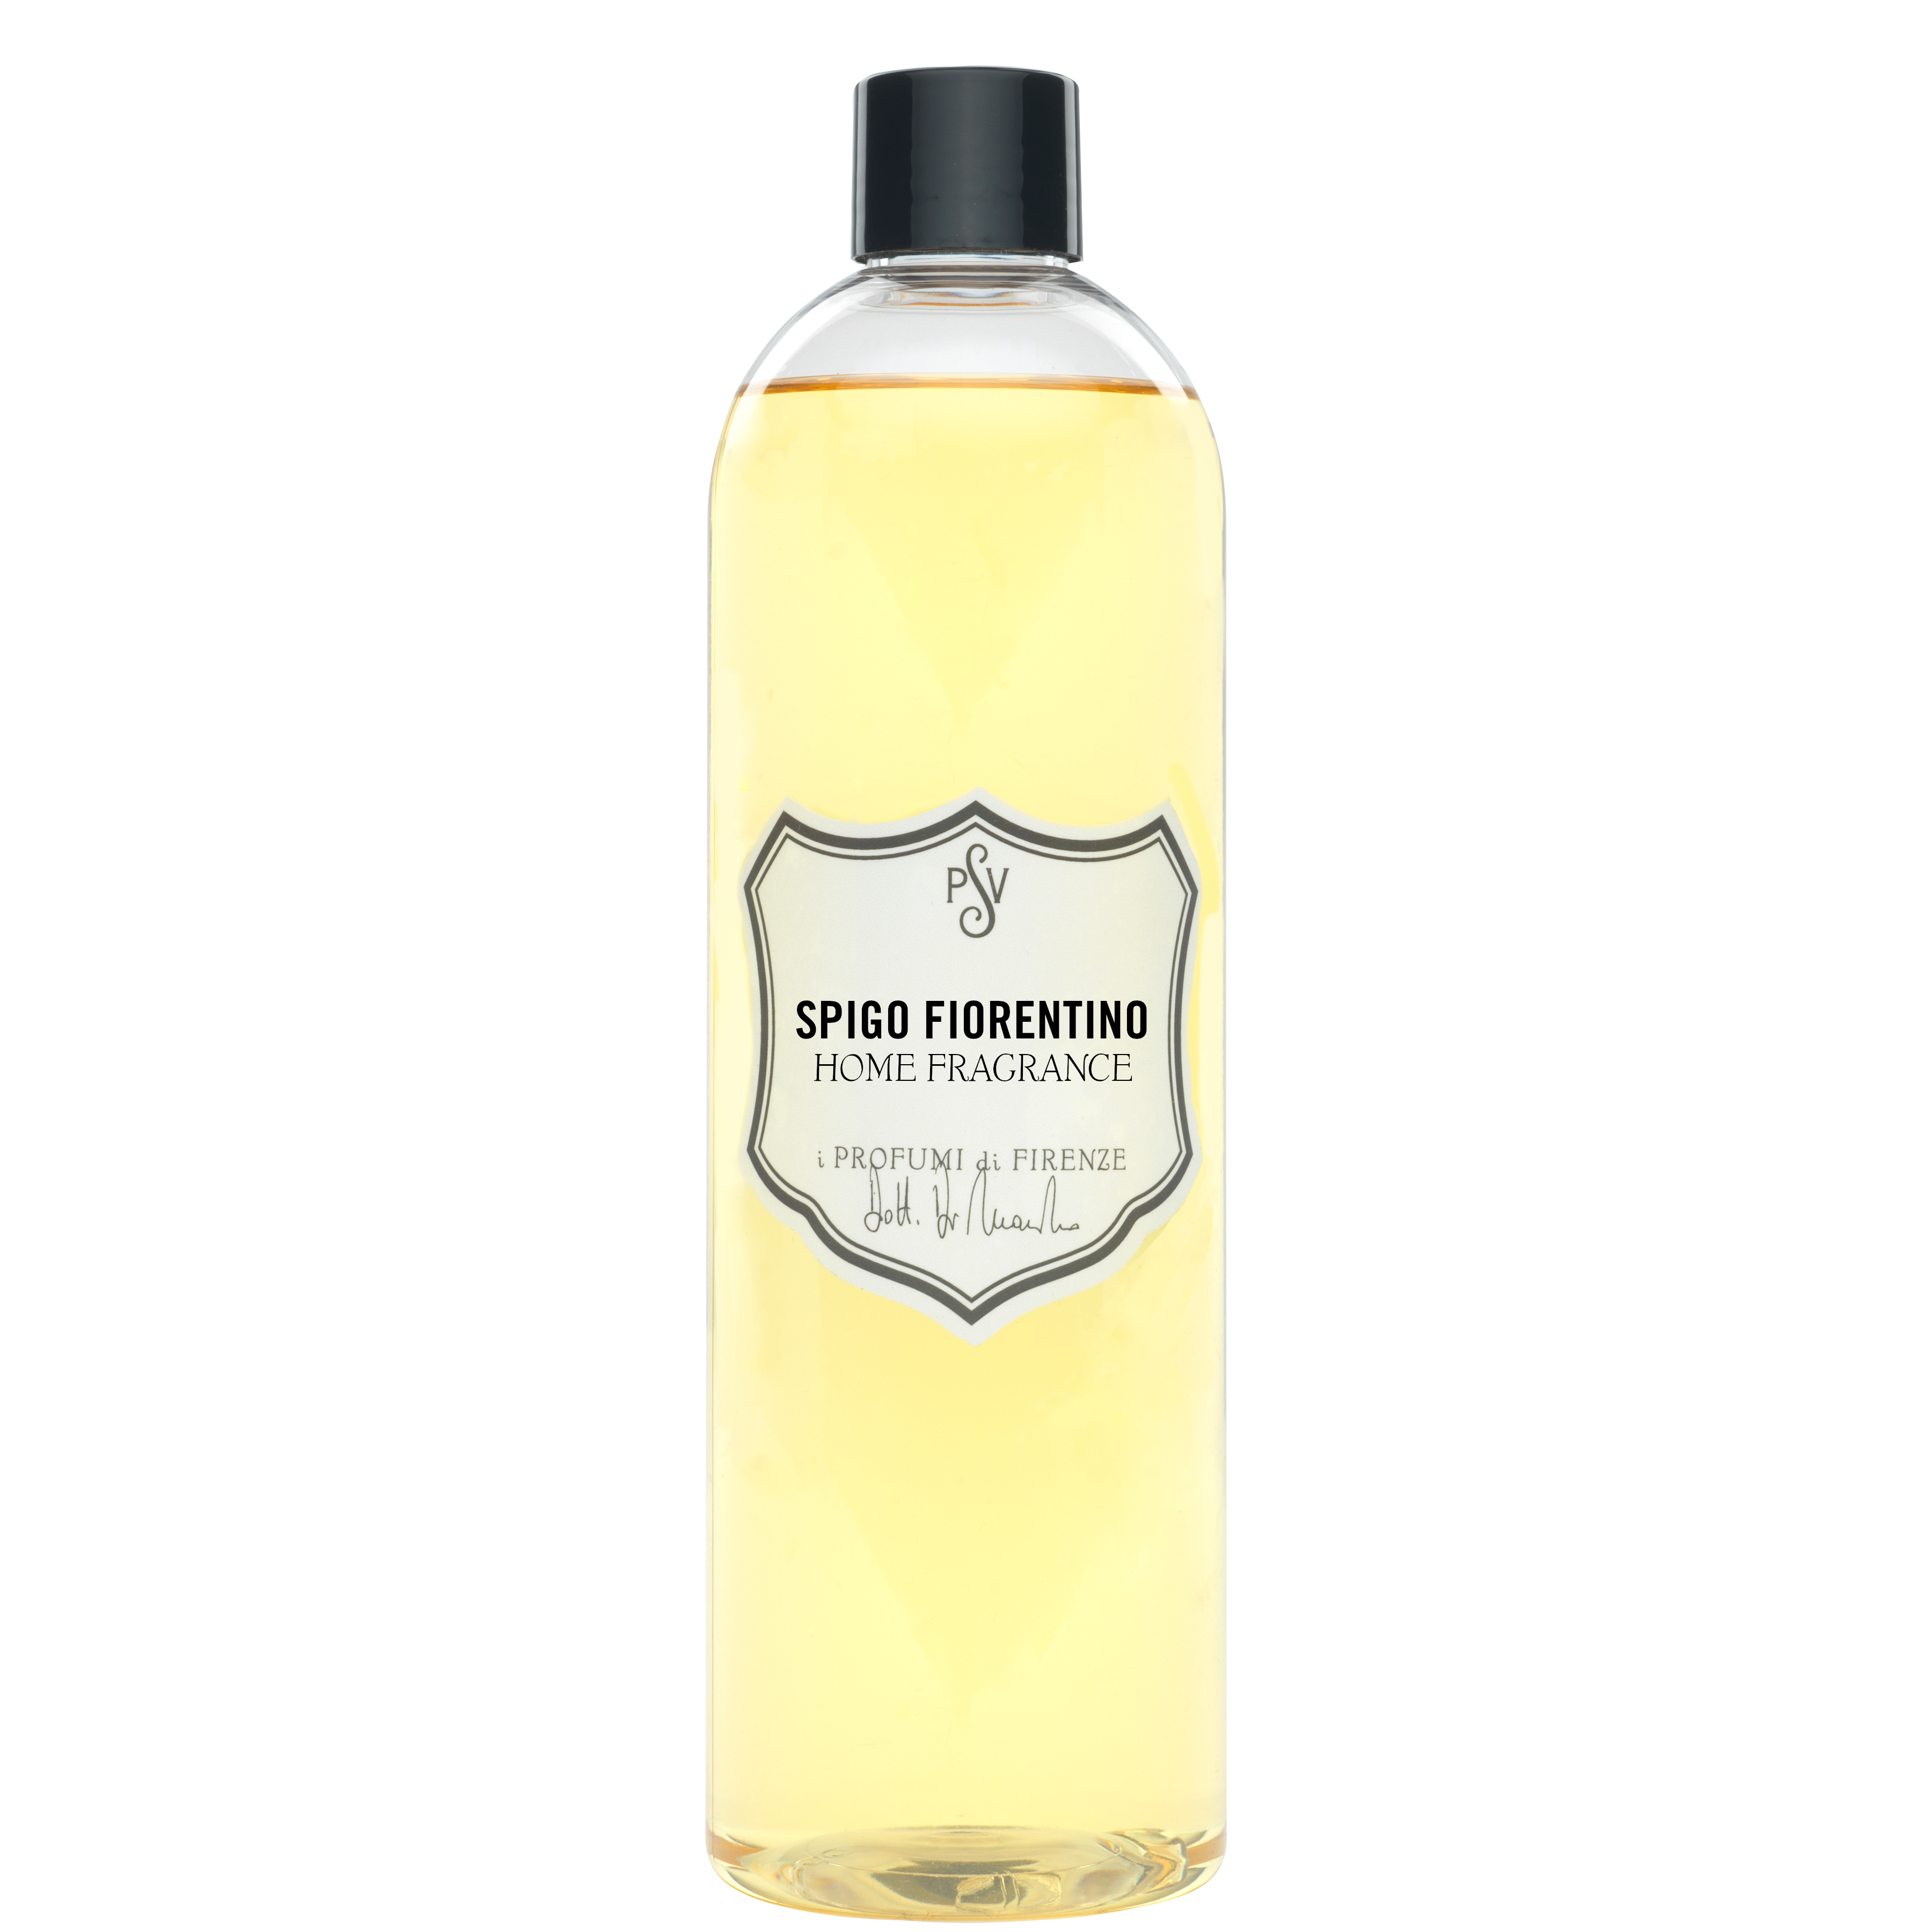 SPIGO FIORENTINO - Home Fragrance-4492